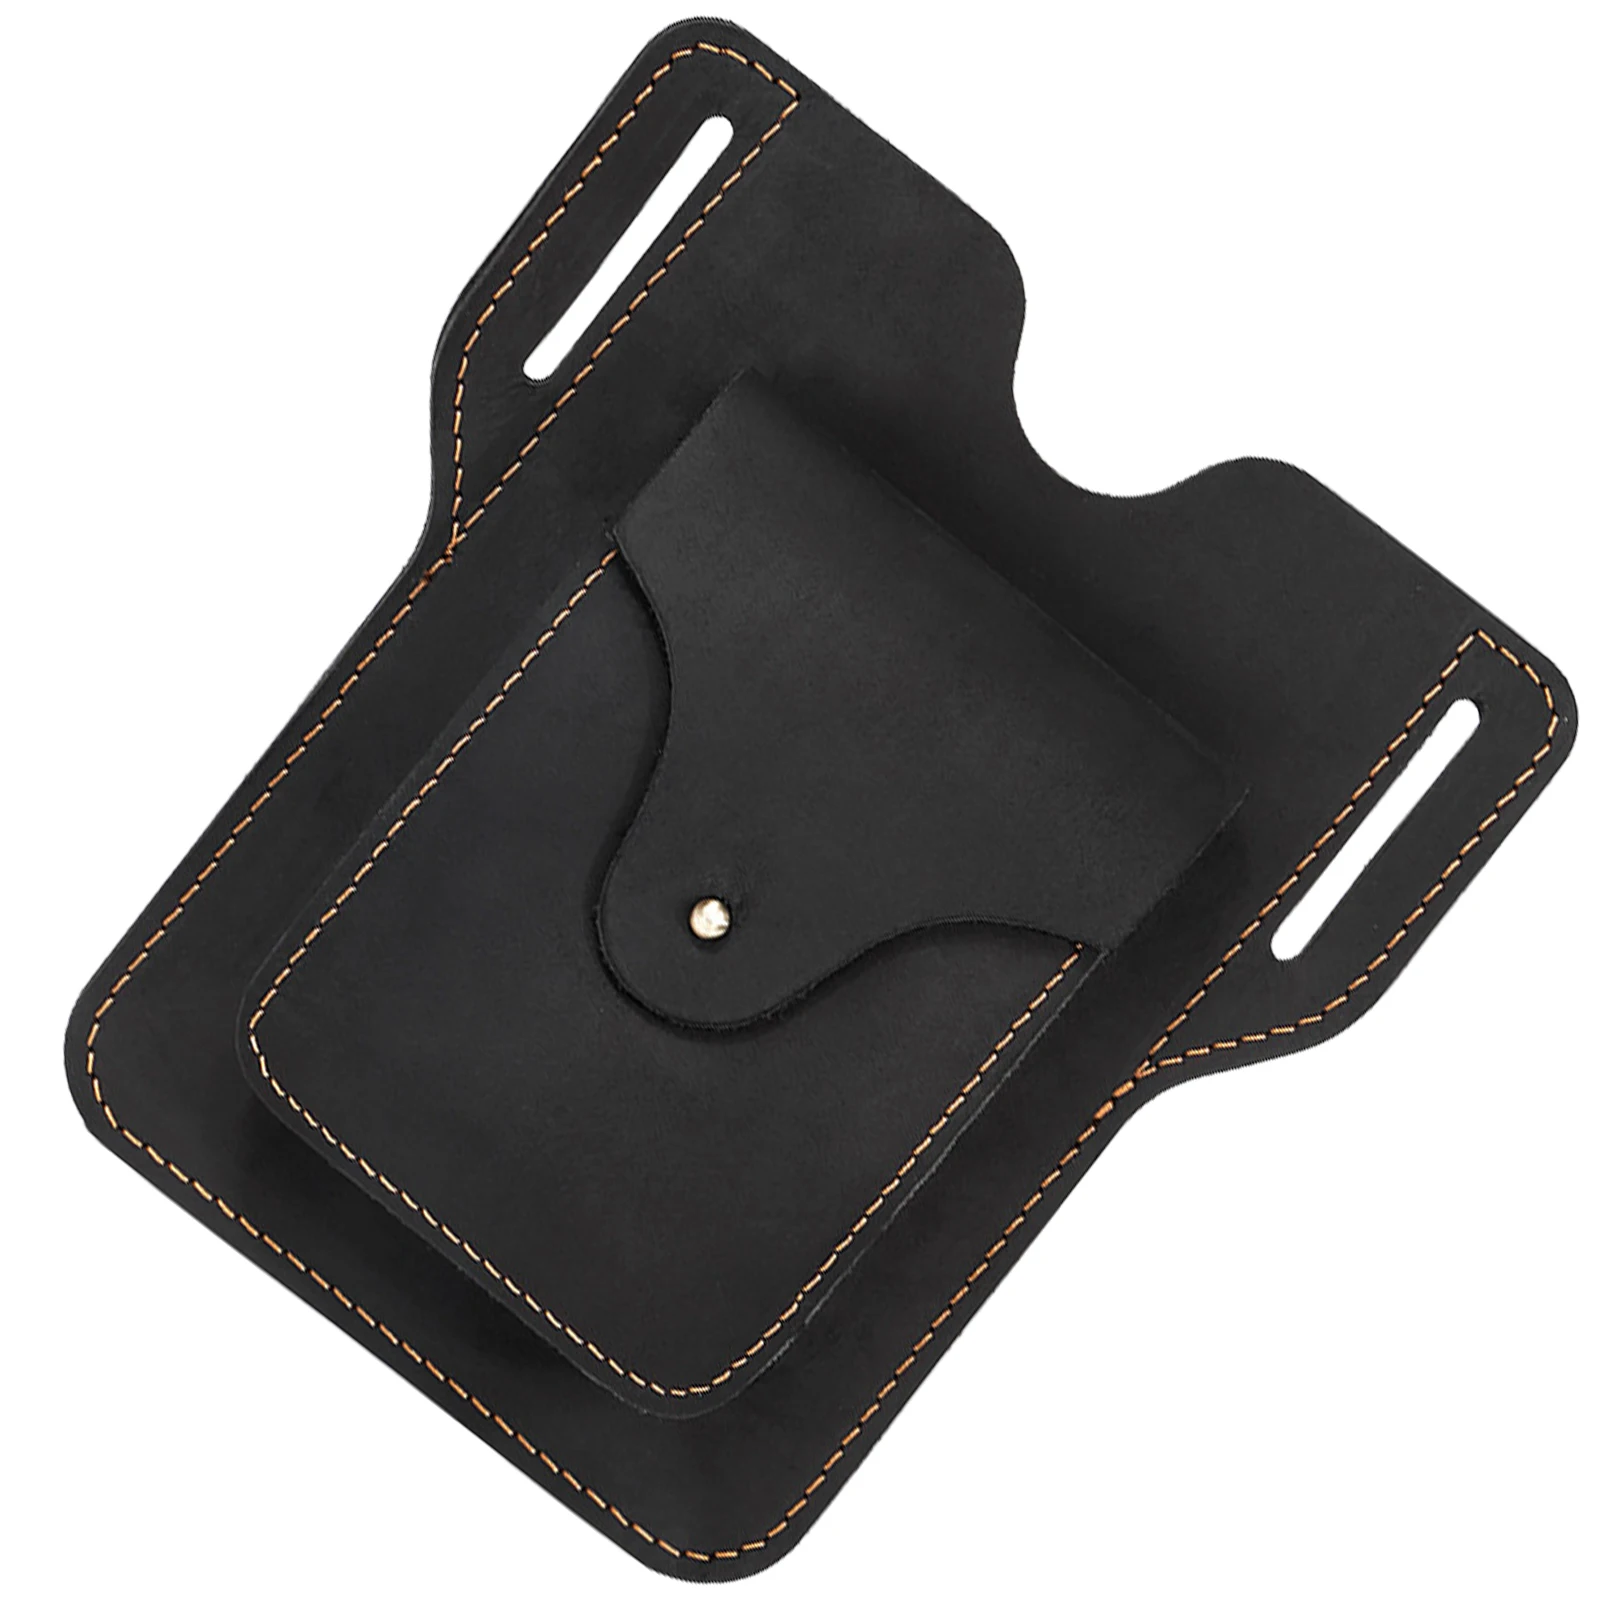 

Кожаная поясная сумка для мужчин, вместительная коричневая сумочка на ремне, сумки через плечо, кошелек с ремешком на застежке